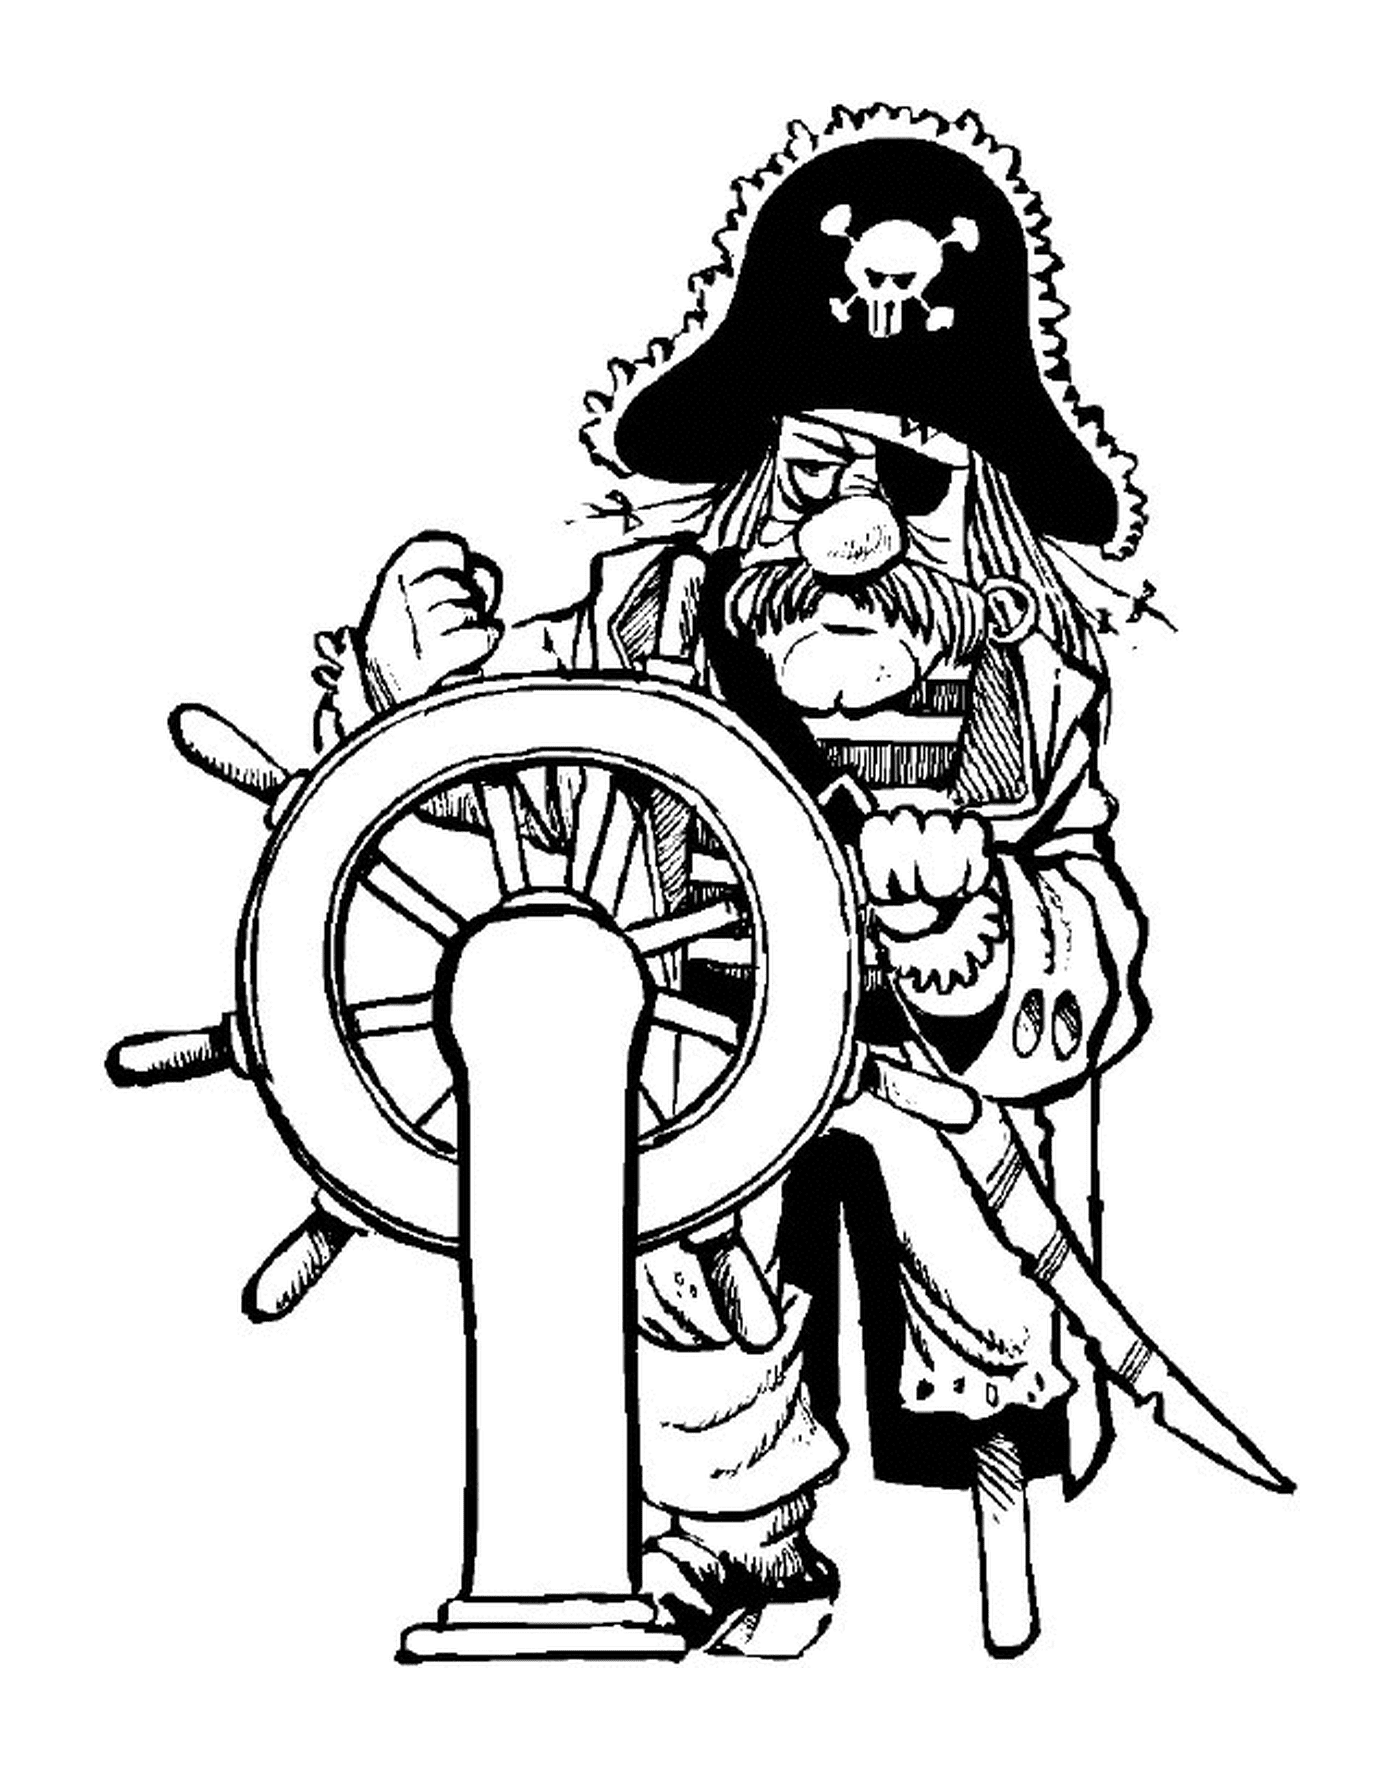  O capitão pirata no leme 